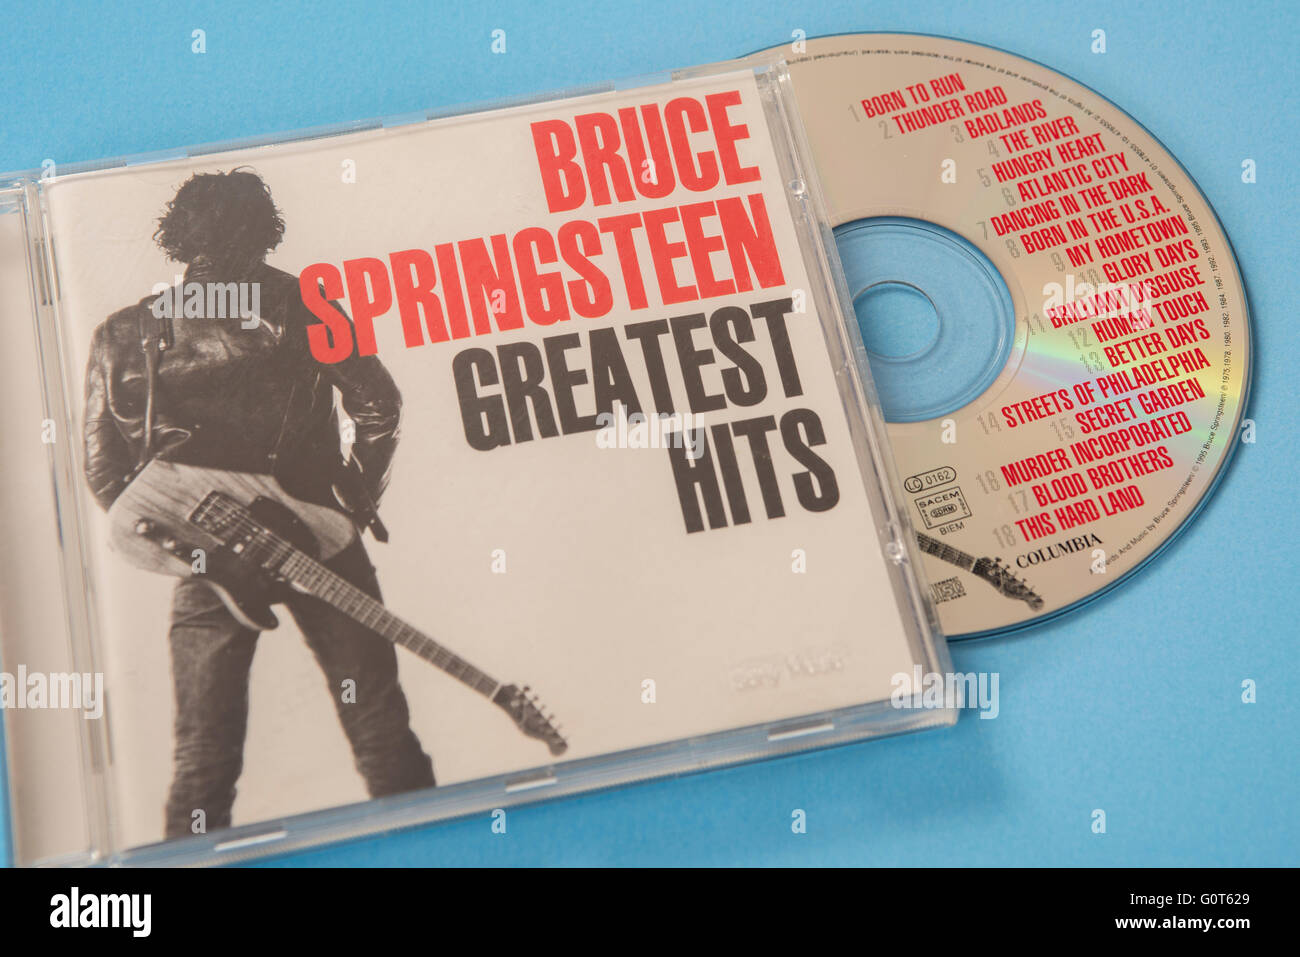 Greatest Hits album par Bruce Springsteen sur disque compact Banque D'Images